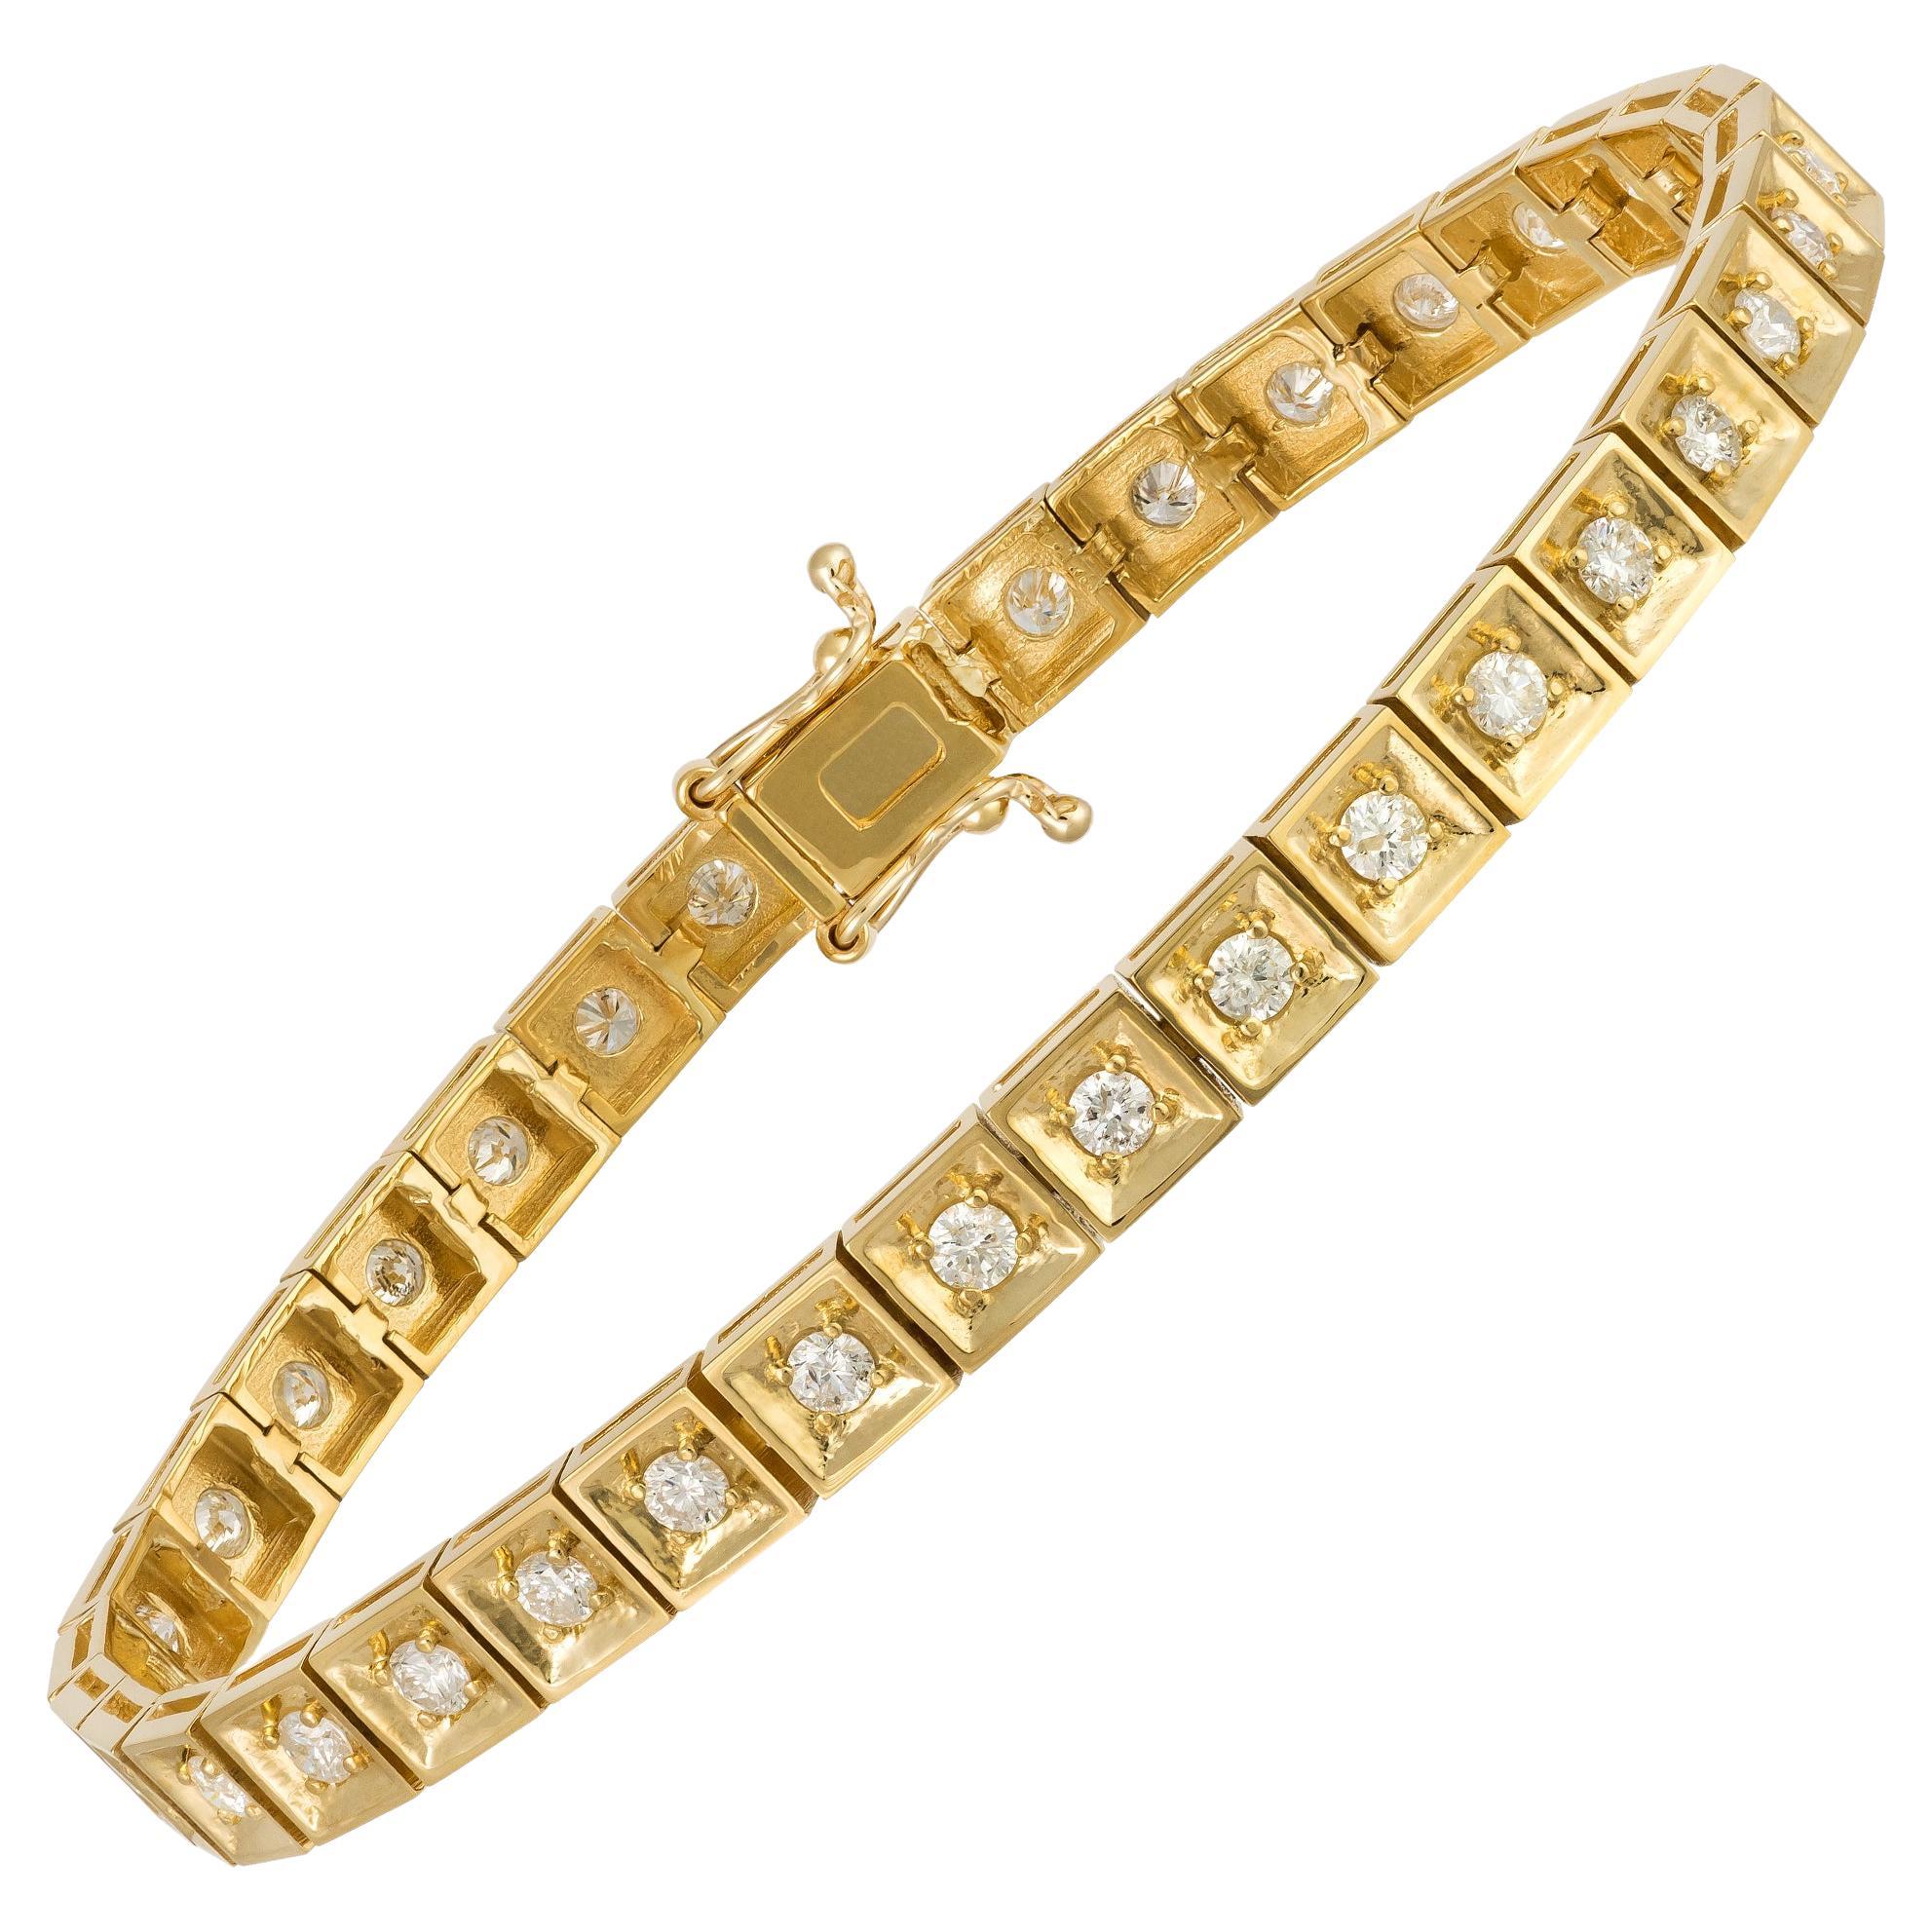 Beeindruckendes 18 Karat Gelbgold-Armband mit Diamanten für ihr